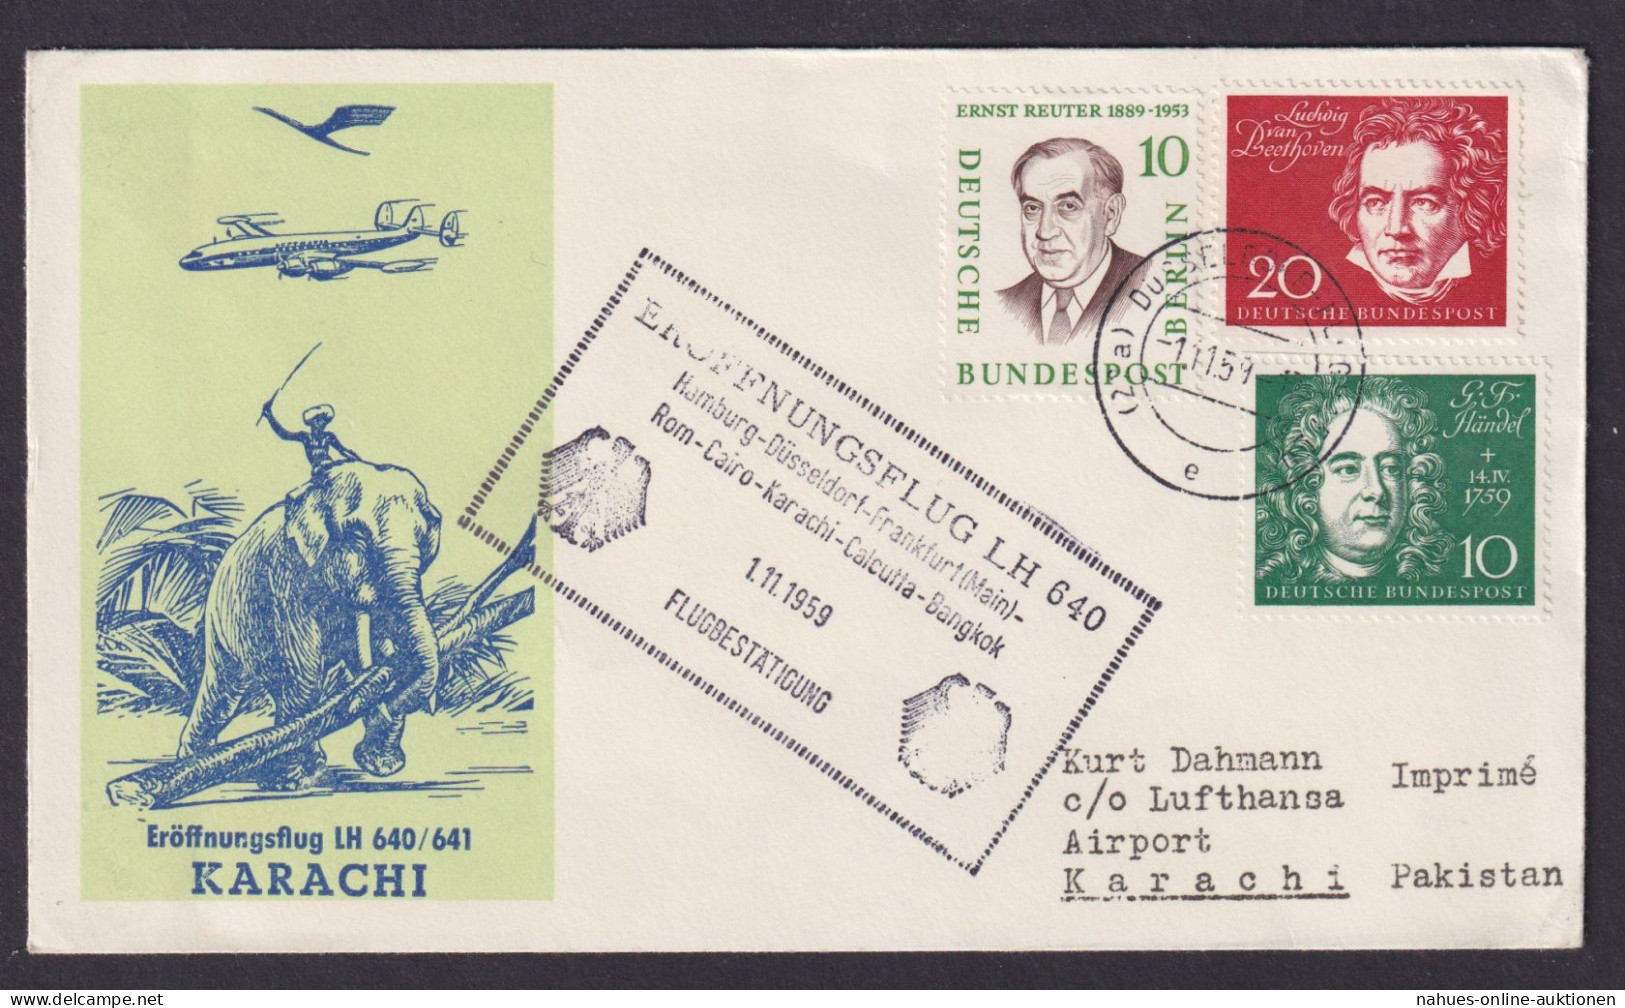 Flugpost Brief Air Mail Gute Destination Lufthansa LH 640 641 Karatschi Palistan - Covers & Documents